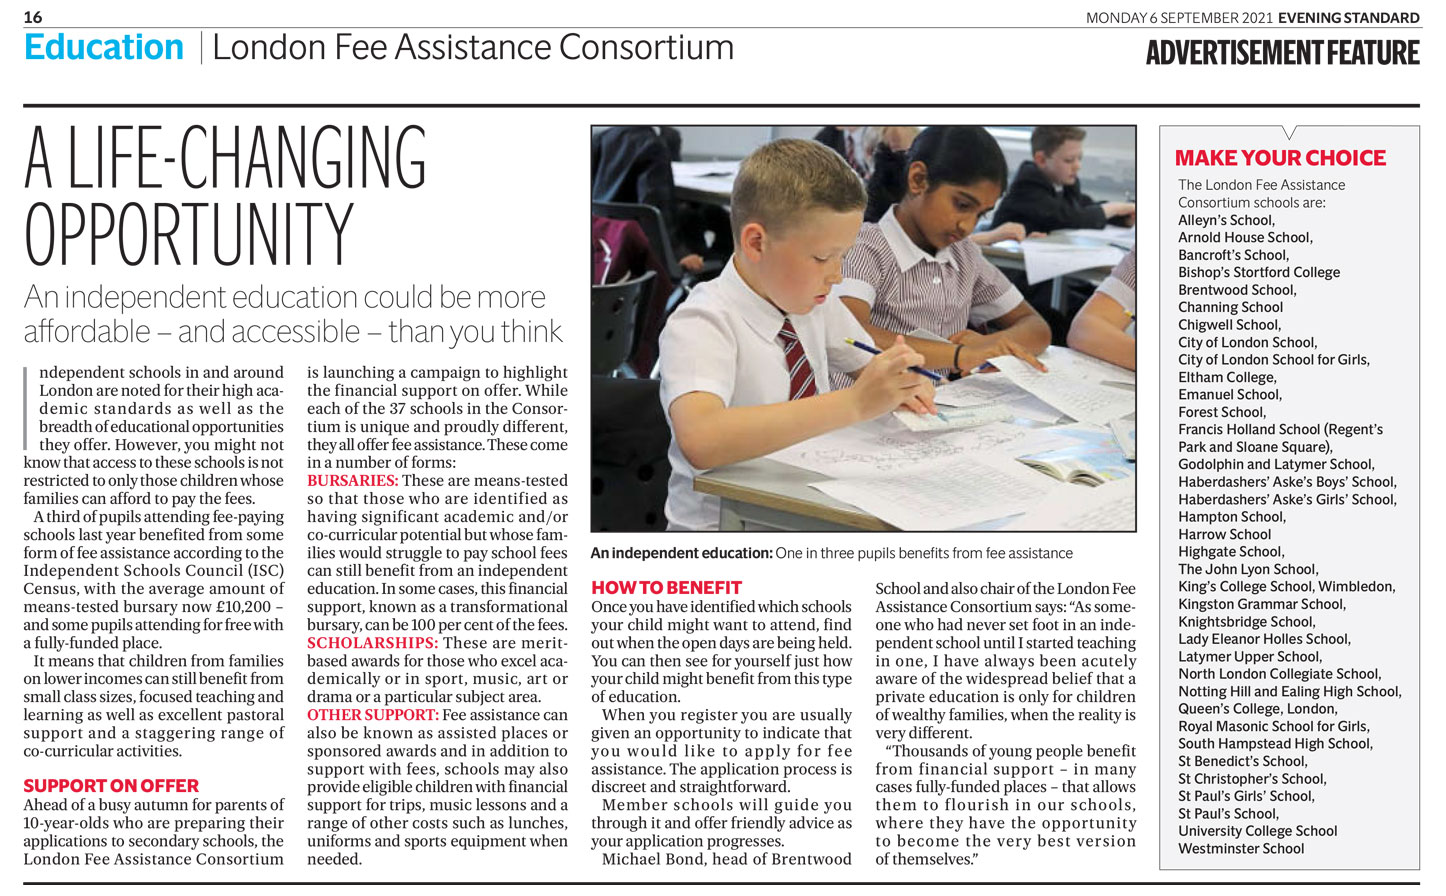 an evening standard news article providing details of an independent school bursary programme